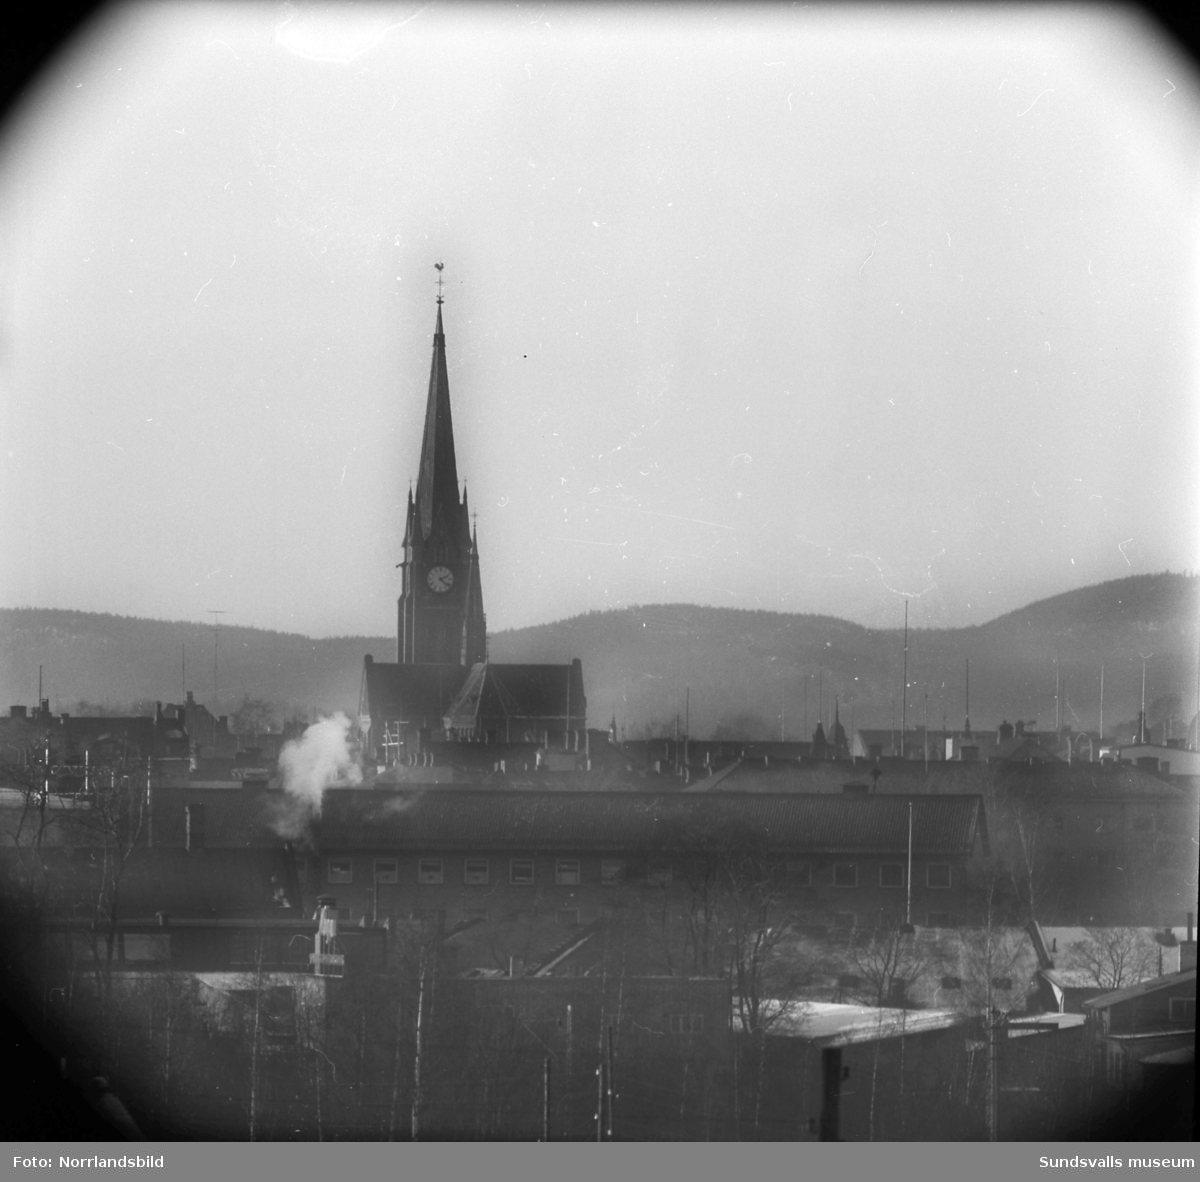 Gustav Adolfs kyrka i Sundsvall, telebild tagen från Kubikenborg.